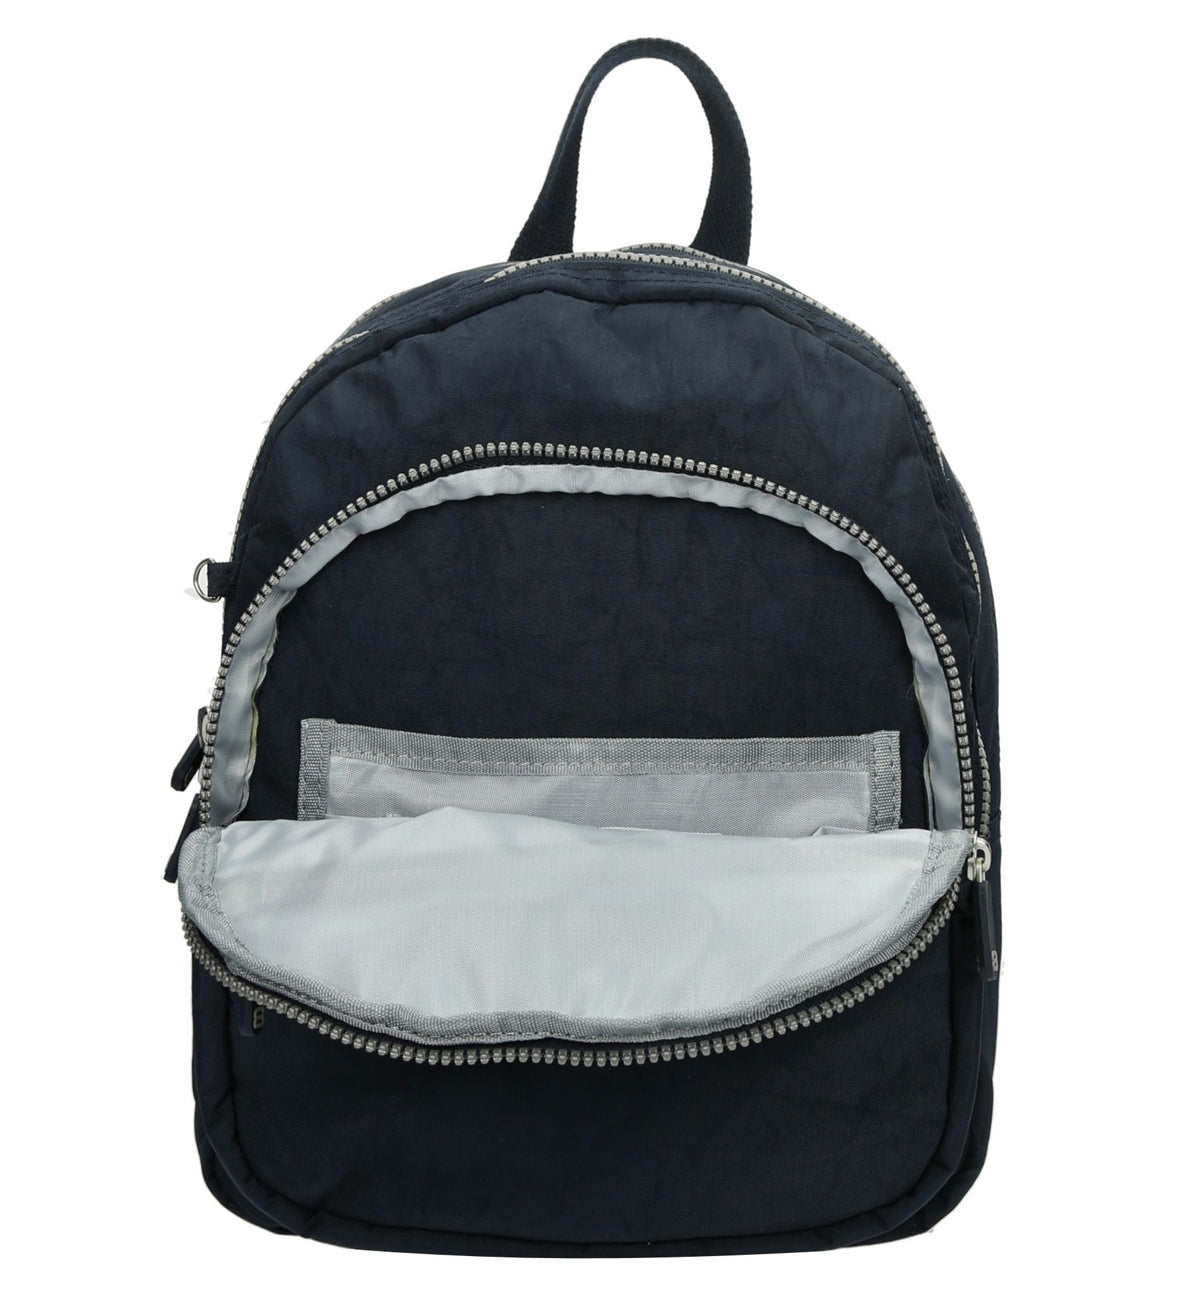 City backpack lichtgewicht blauw medium size